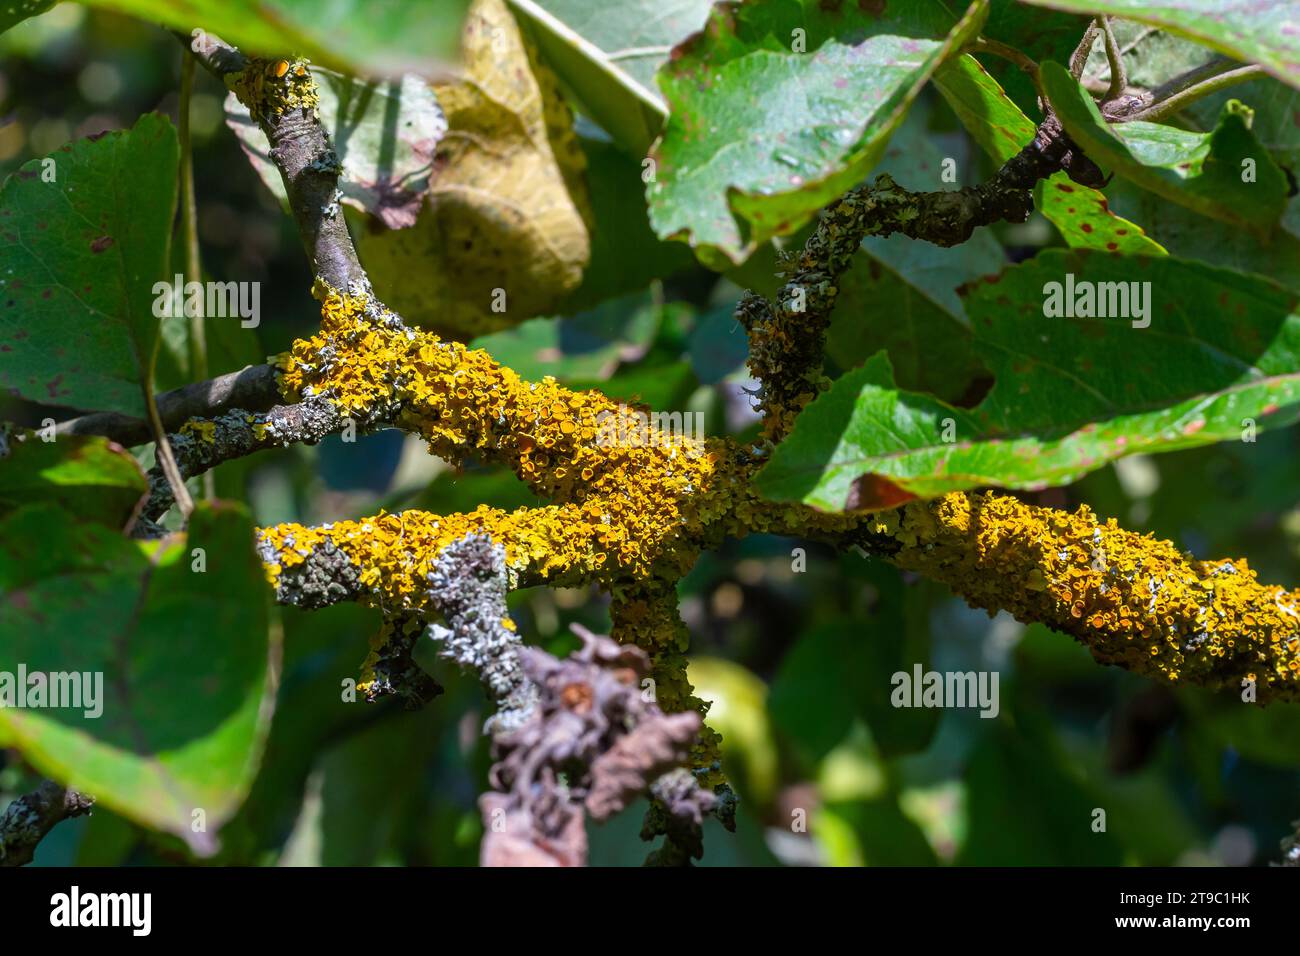 Orange lichen, yellow scale, maritime sunburst lichen or shore lichen Xanthoria parietina is a foliose or leafy lichen. Intensive color of structures Stock Photo